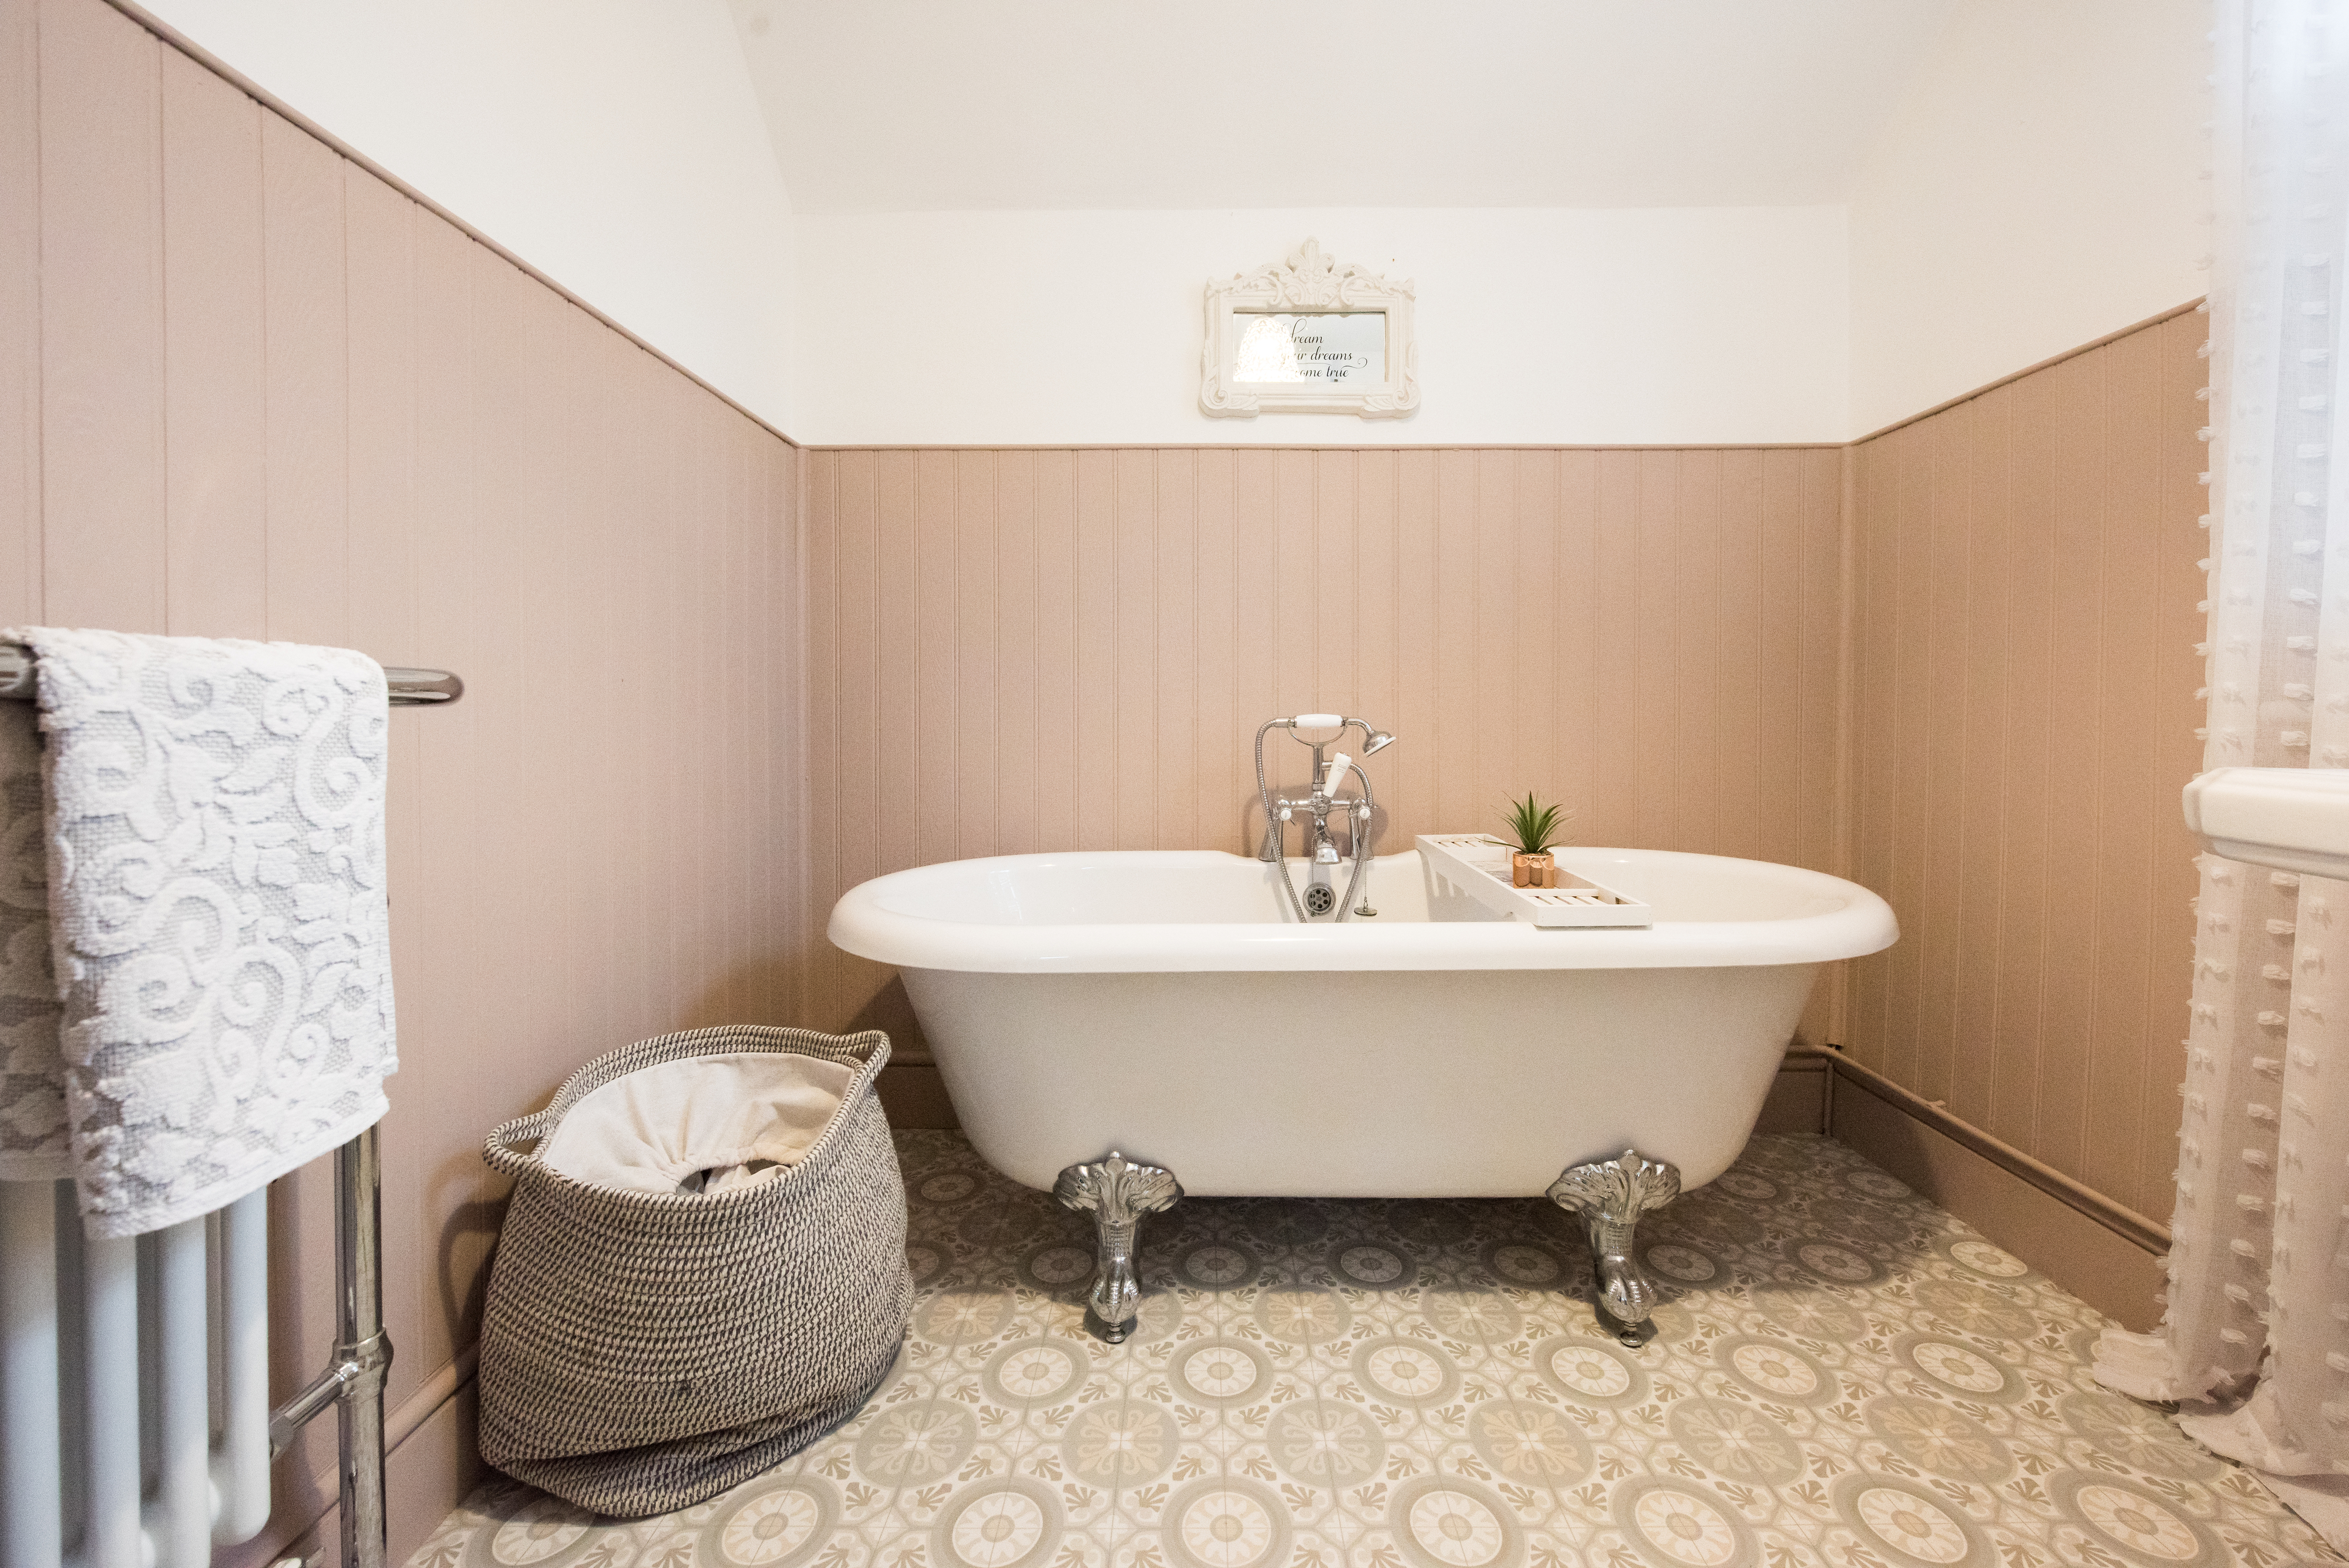 A claw-foot tub in a cozy bathroom setting